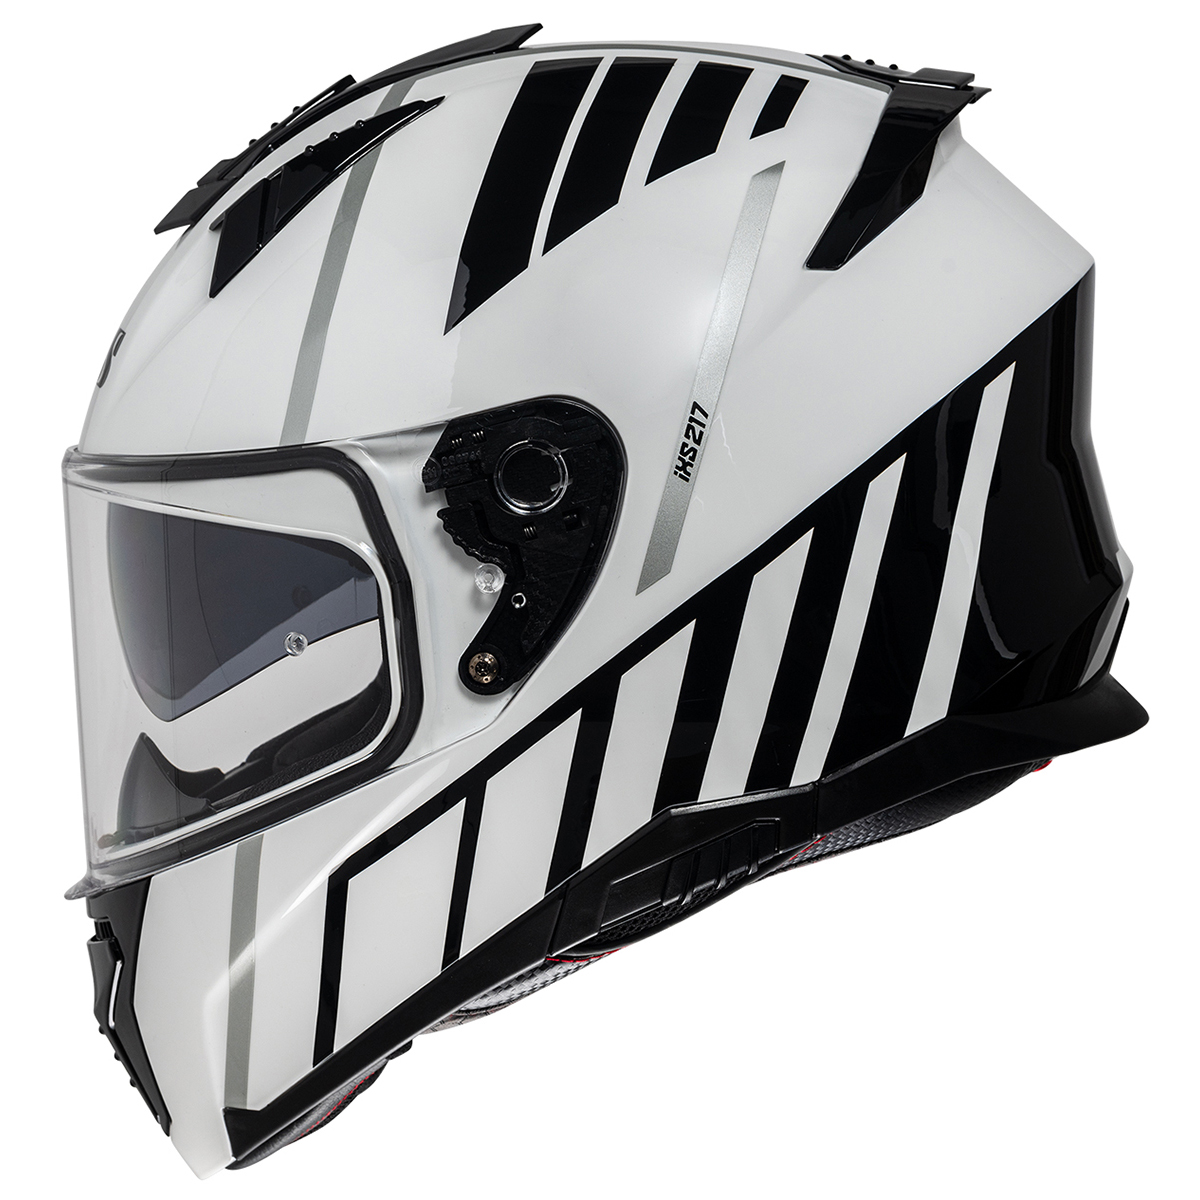 iXS Helm iXS217 2.0, weiß-schwarz